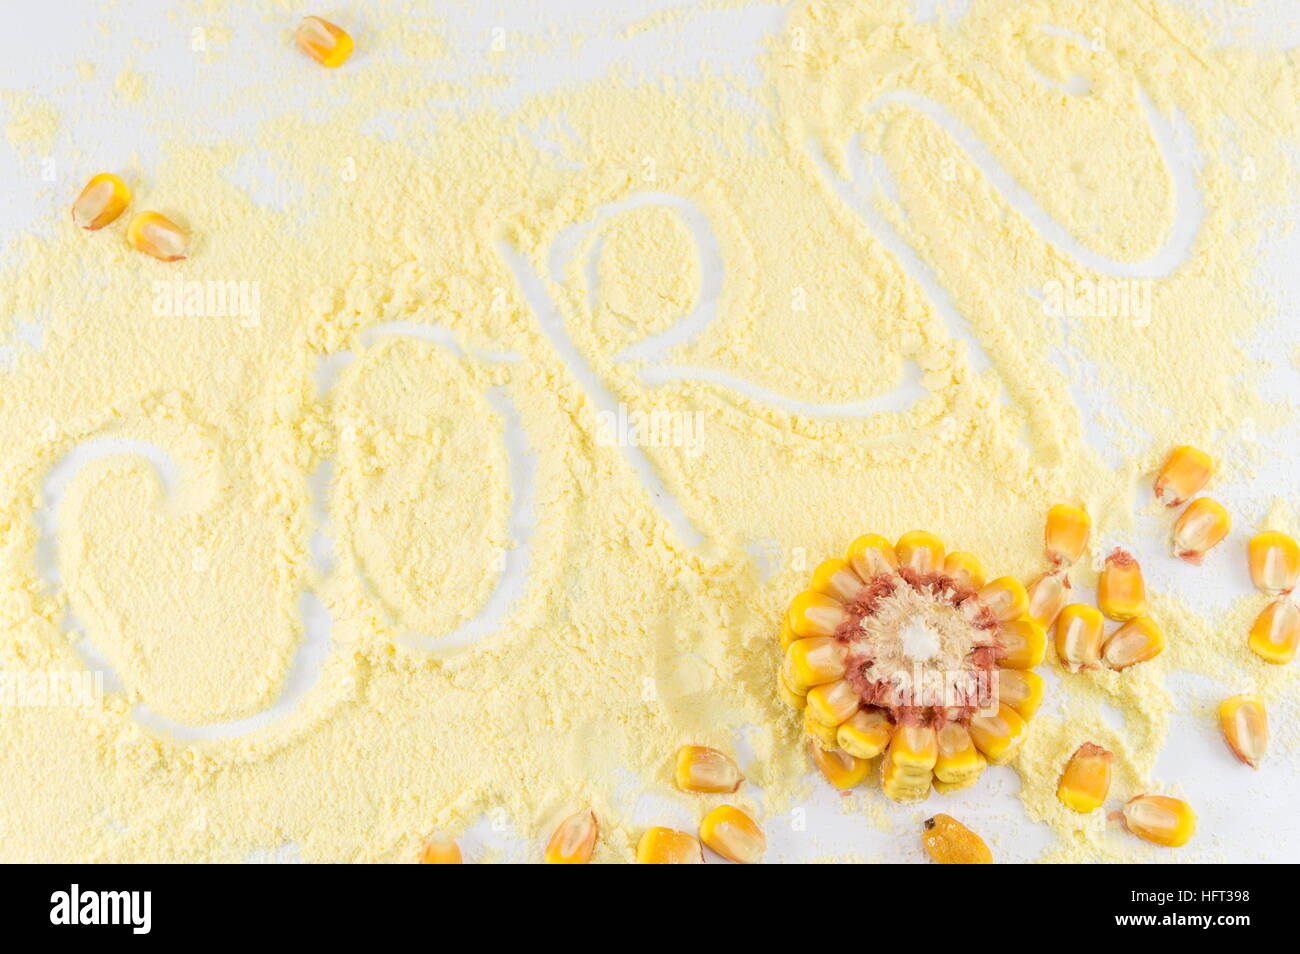 La farine de maïs avec le mot écrit en maïs avec des épis de maïs Banque D'Images